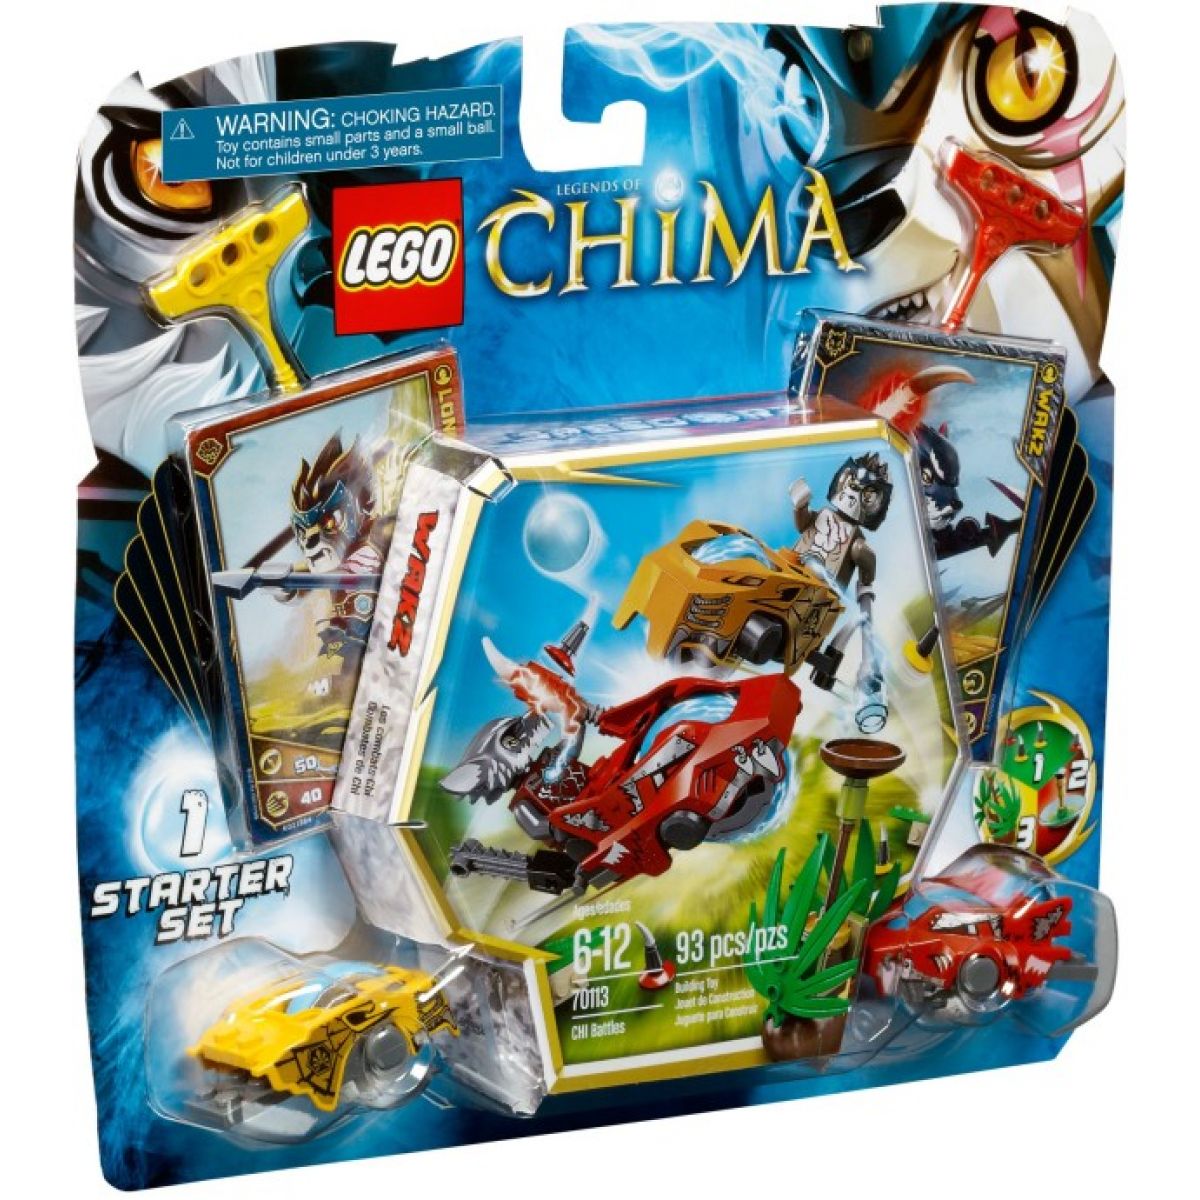 LEGO CHIMA 70113 Souboje Chi